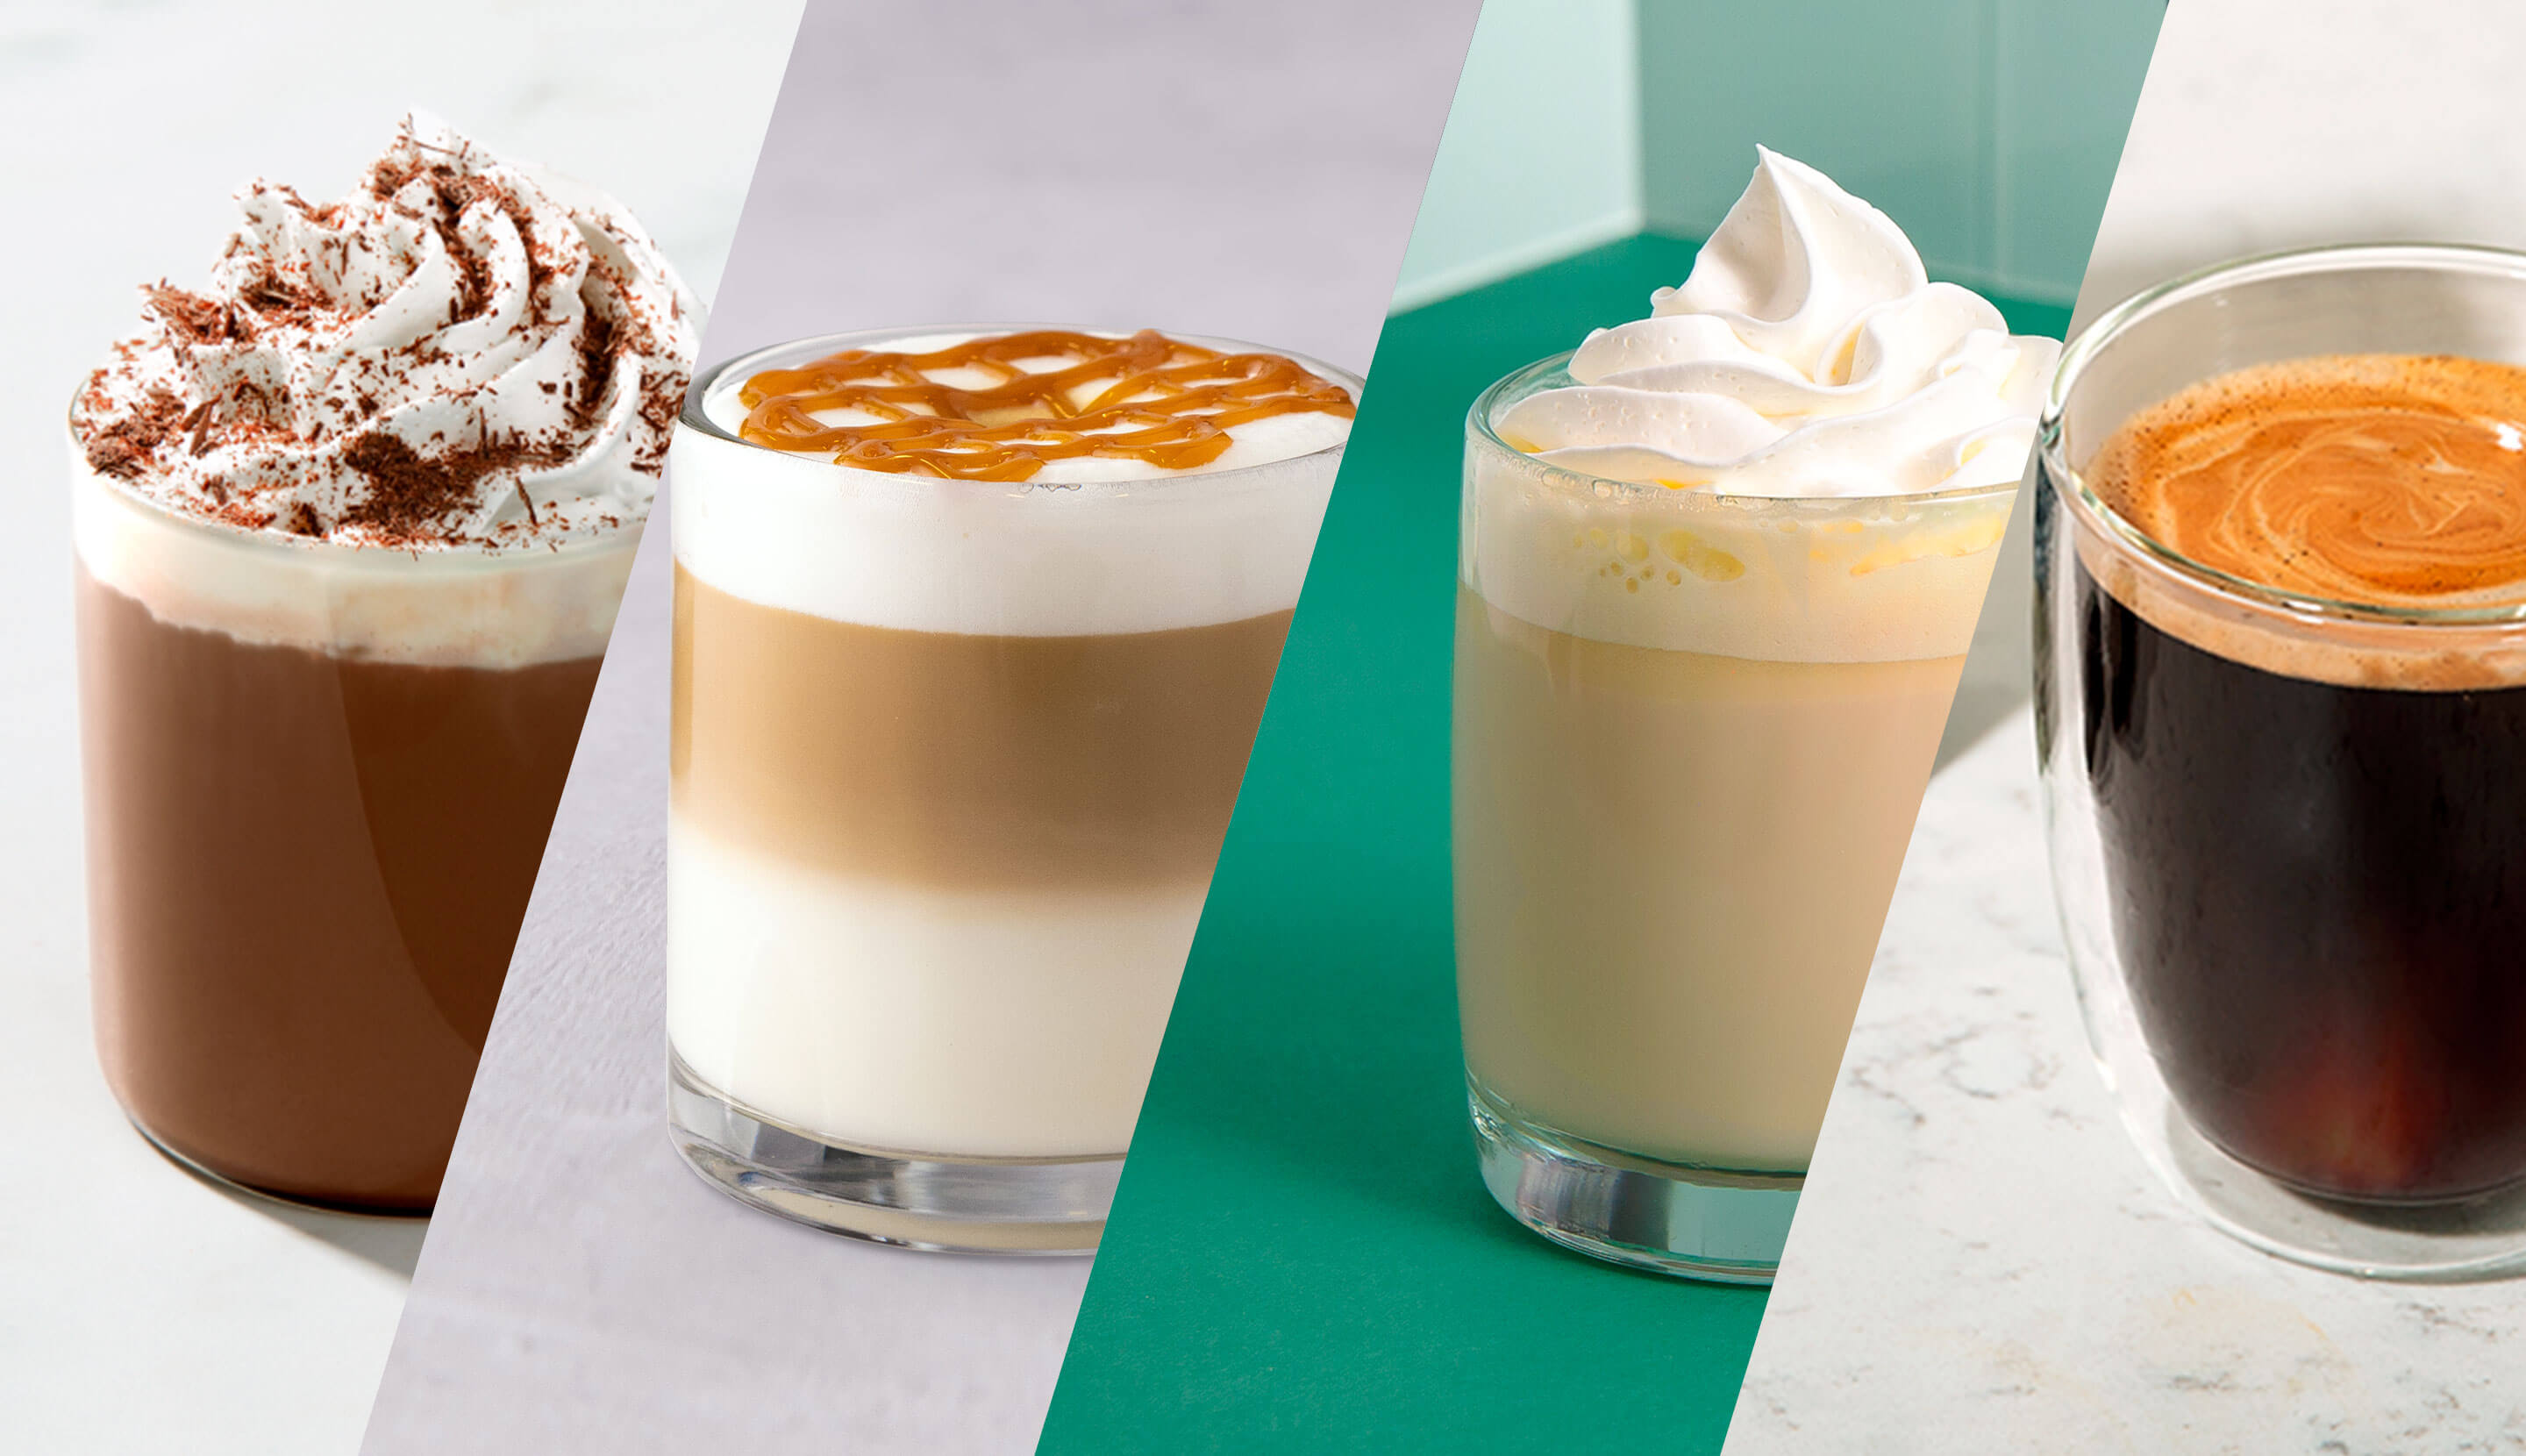 Caffè Misto vs. Latte  Starbucks drinks recipes, Starbucks drinks, Healthy  starbucks drinks